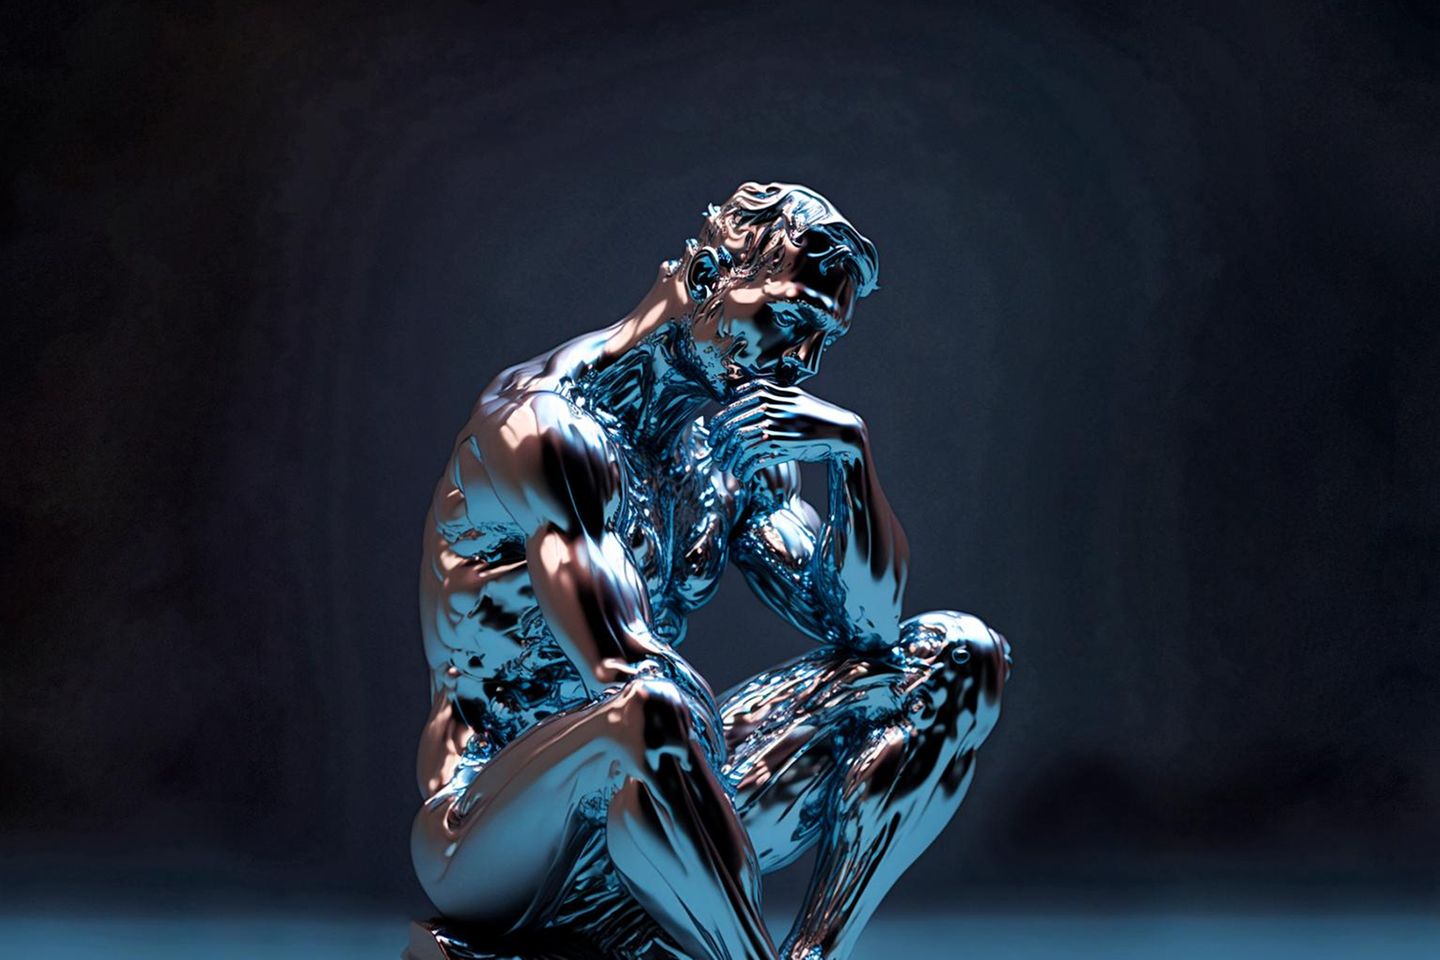 Ein Denker, inspiriert von Rodin – aber erschaffen von der KI-Anwendung Midjourney